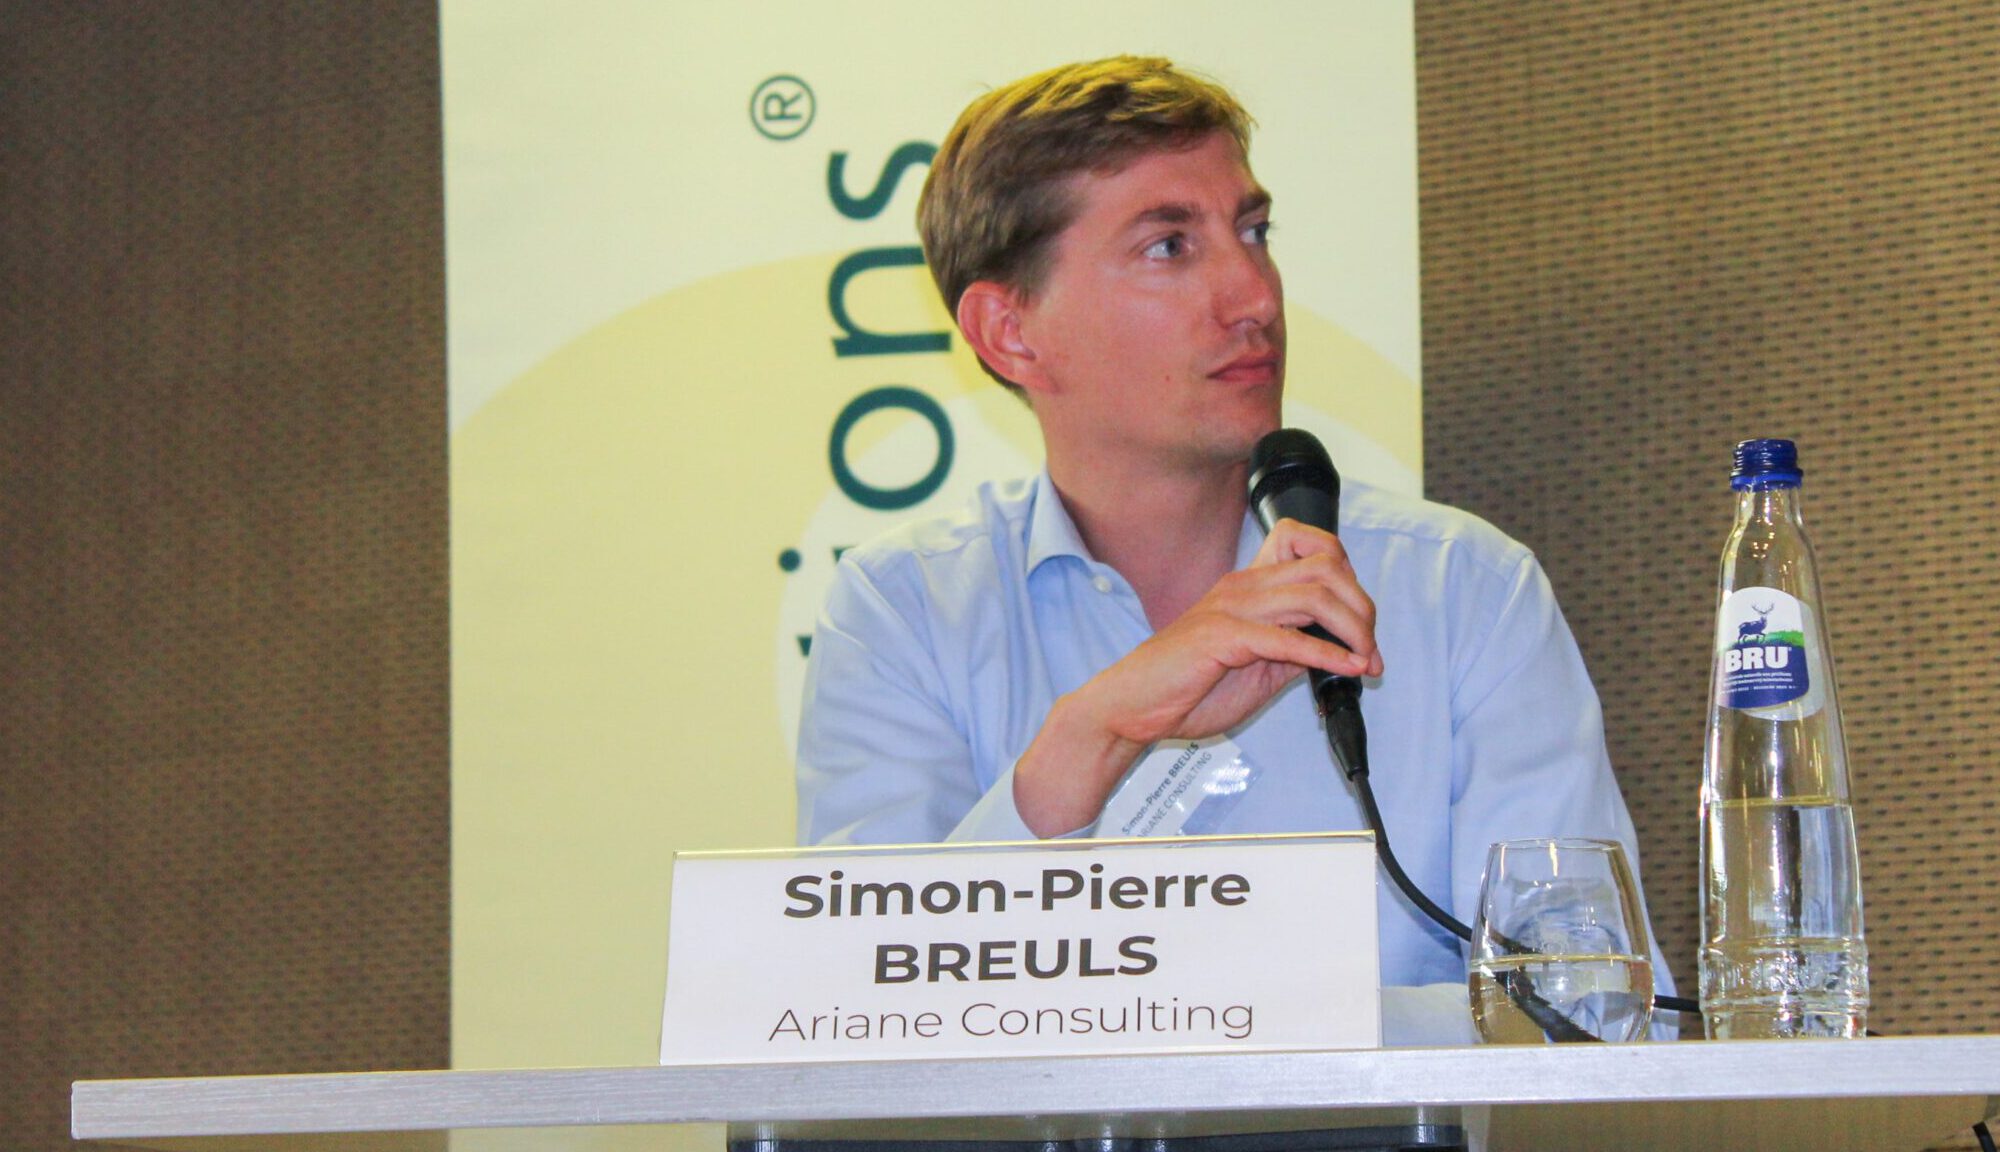 Intervention de Simon-Pierre Breuls (Ariane Consulting) lors du débat organisé par le Cercle du Lac sur le thème de la transformation digitale des PME